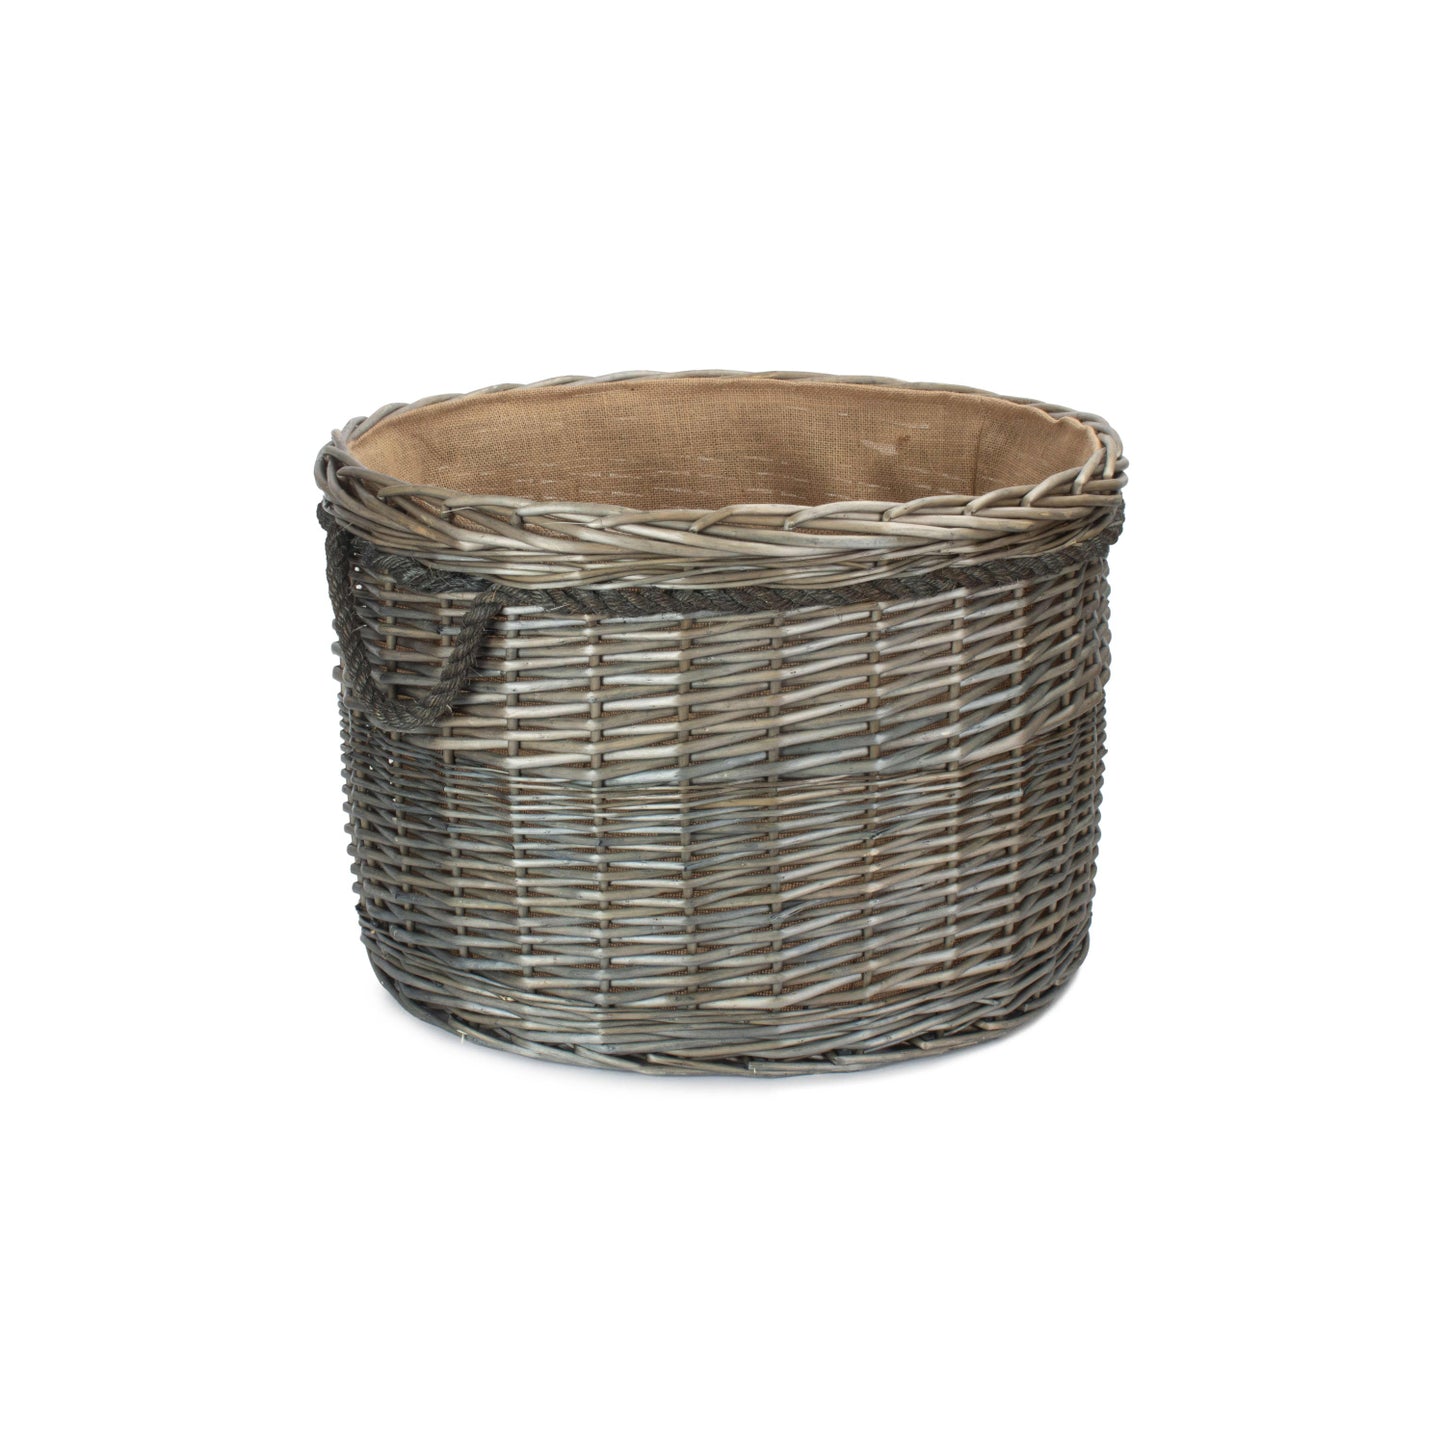 Size 3 Antique Wash Round Storage Basket